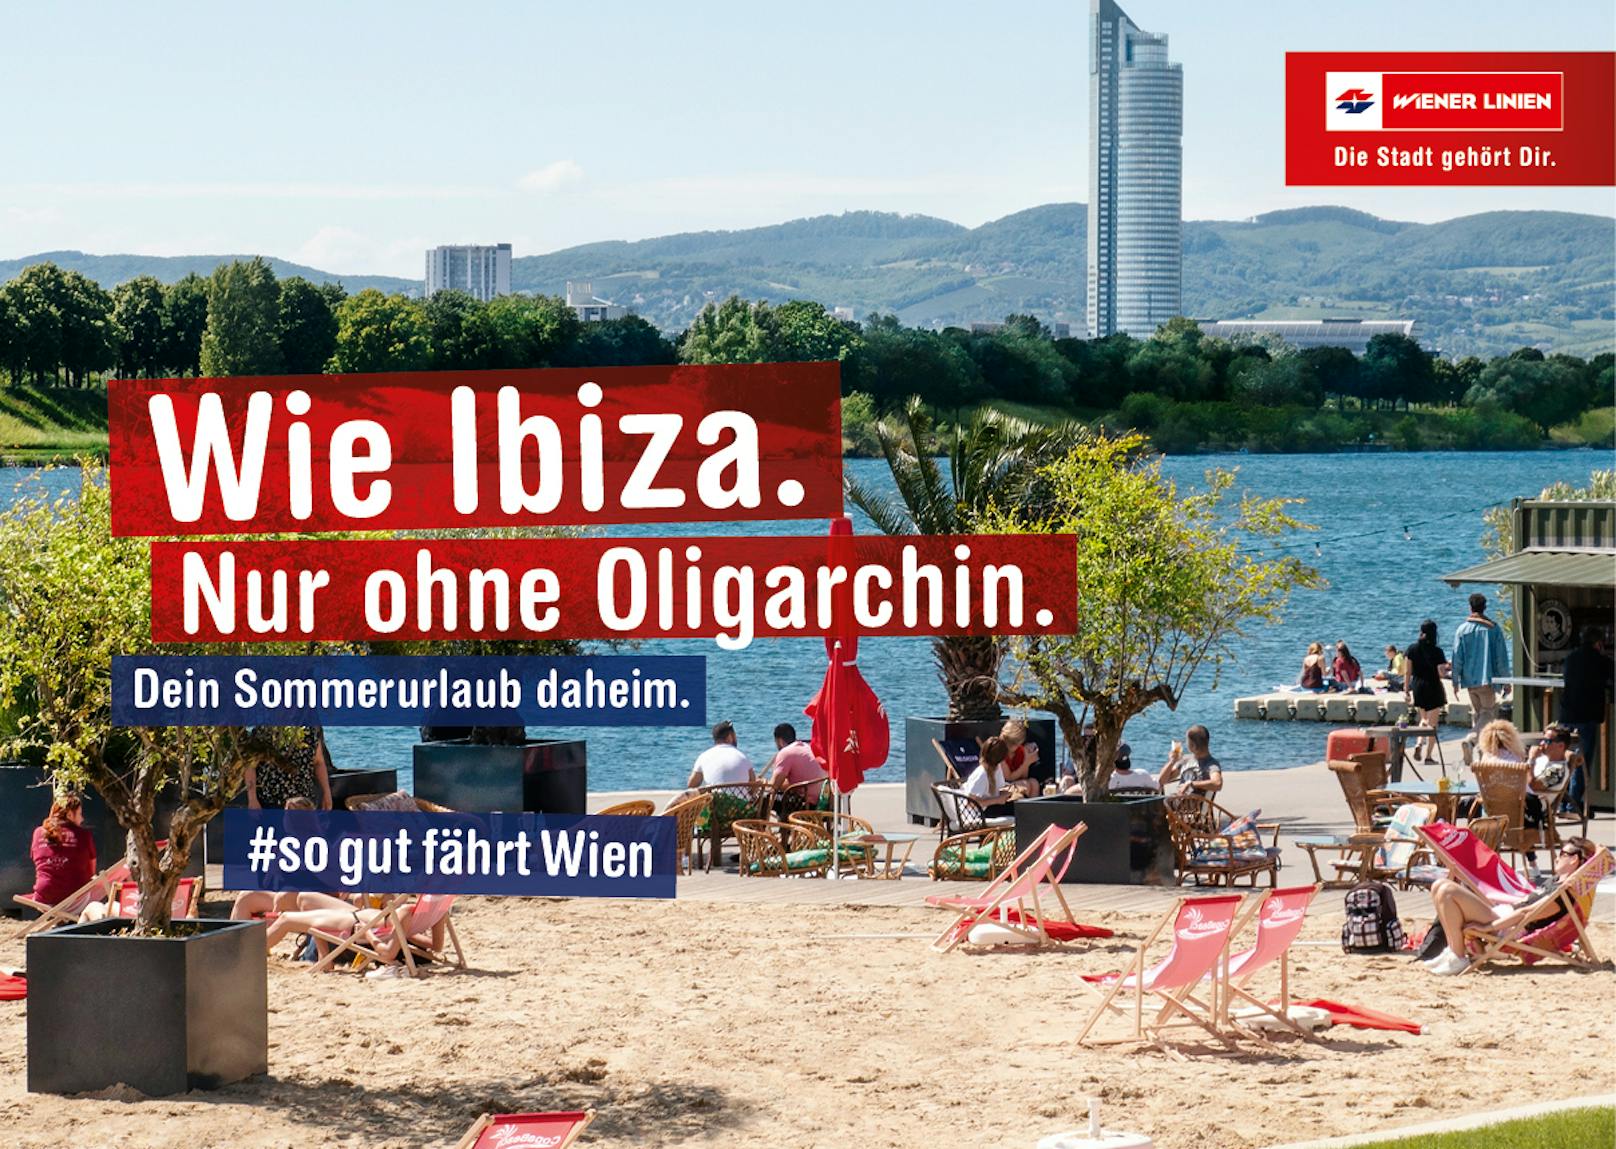 Mit acht Sujets werben die Wiener Linien für Wien als Urlaubsziel. Und nimmt dabei Anleihen bei der Ibiza-Affäre.